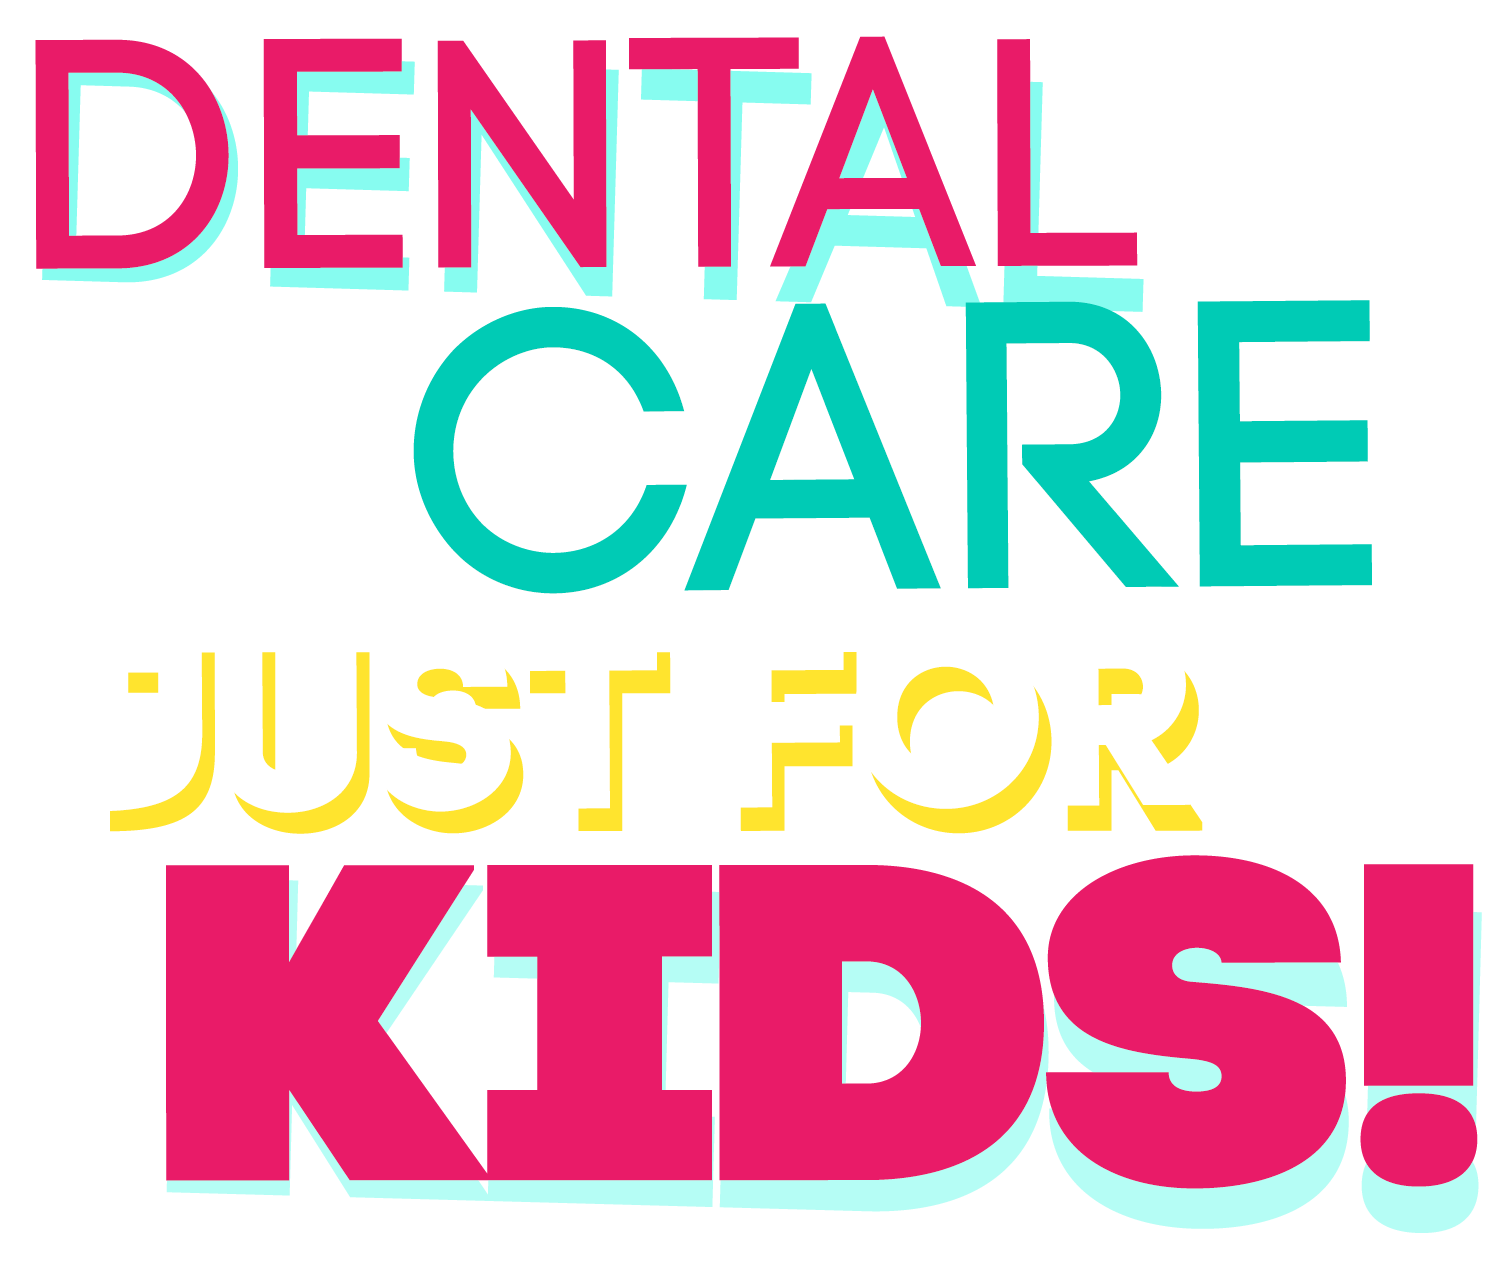 Dental Care Just for Kids!